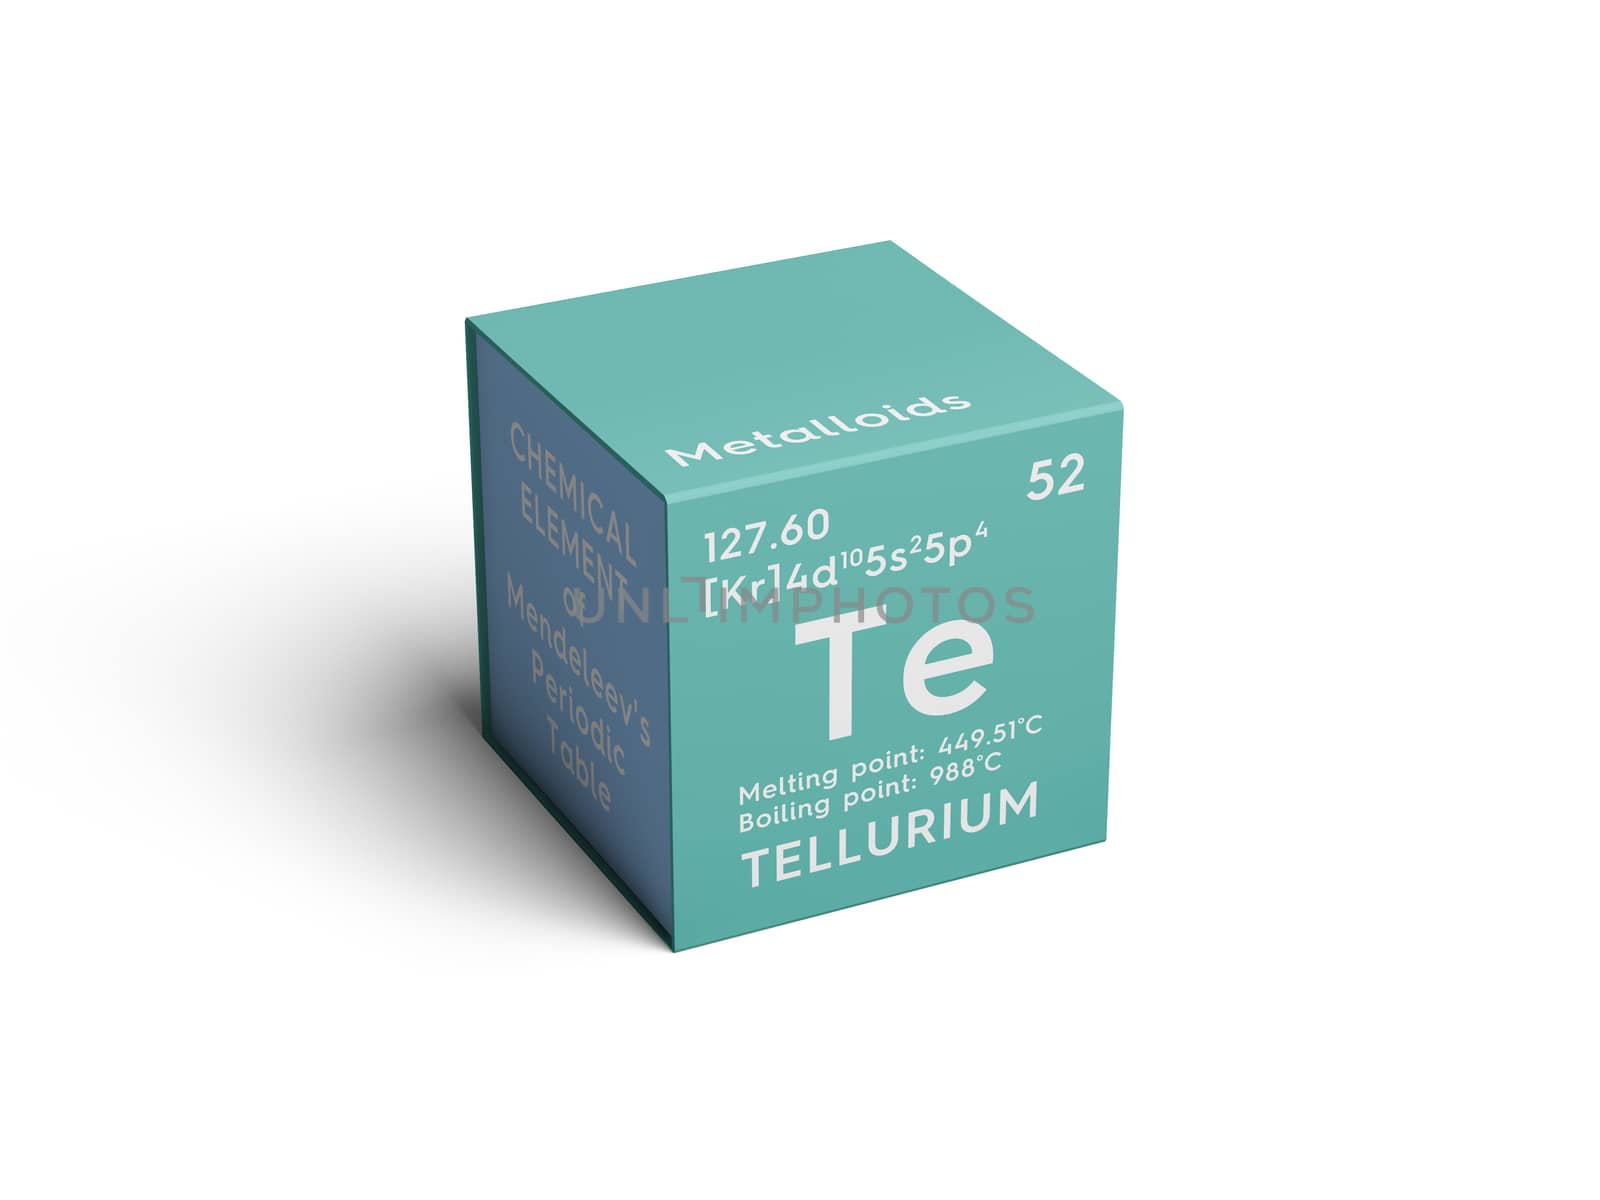 Tellurium. Metalloids. Chemical Element of Mendeleev's Periodic Table. Tellurium in square cube creative concept. 3D illustration.